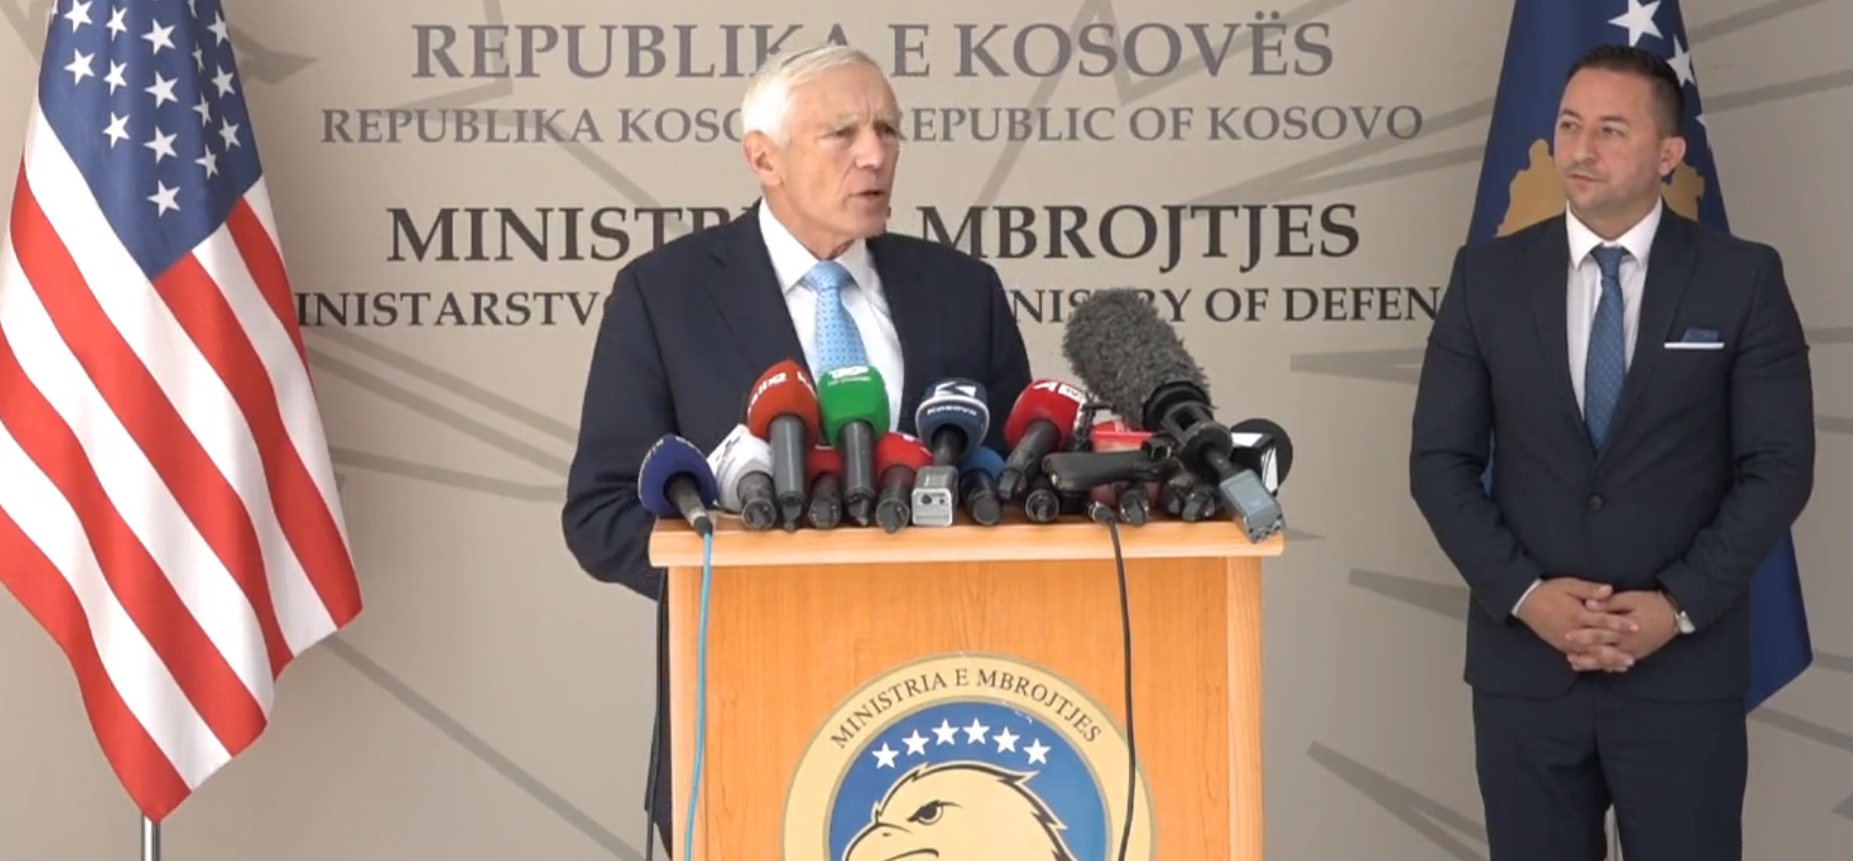  Gjenerali Clark: Populli i Kosovës është shembull për botën